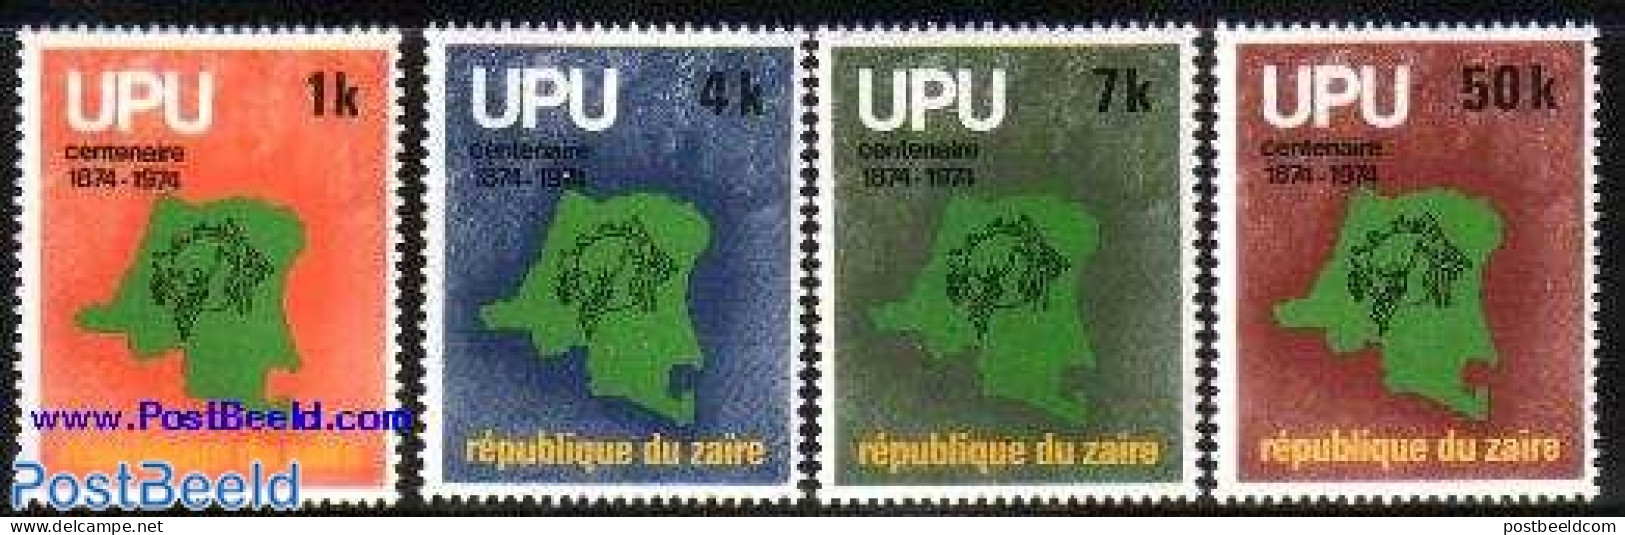 Congo Dem. Republic, (zaire) 1976 UPU Centenary 4v, Mint NH, Various - U.P.U. - Maps - U.P.U.